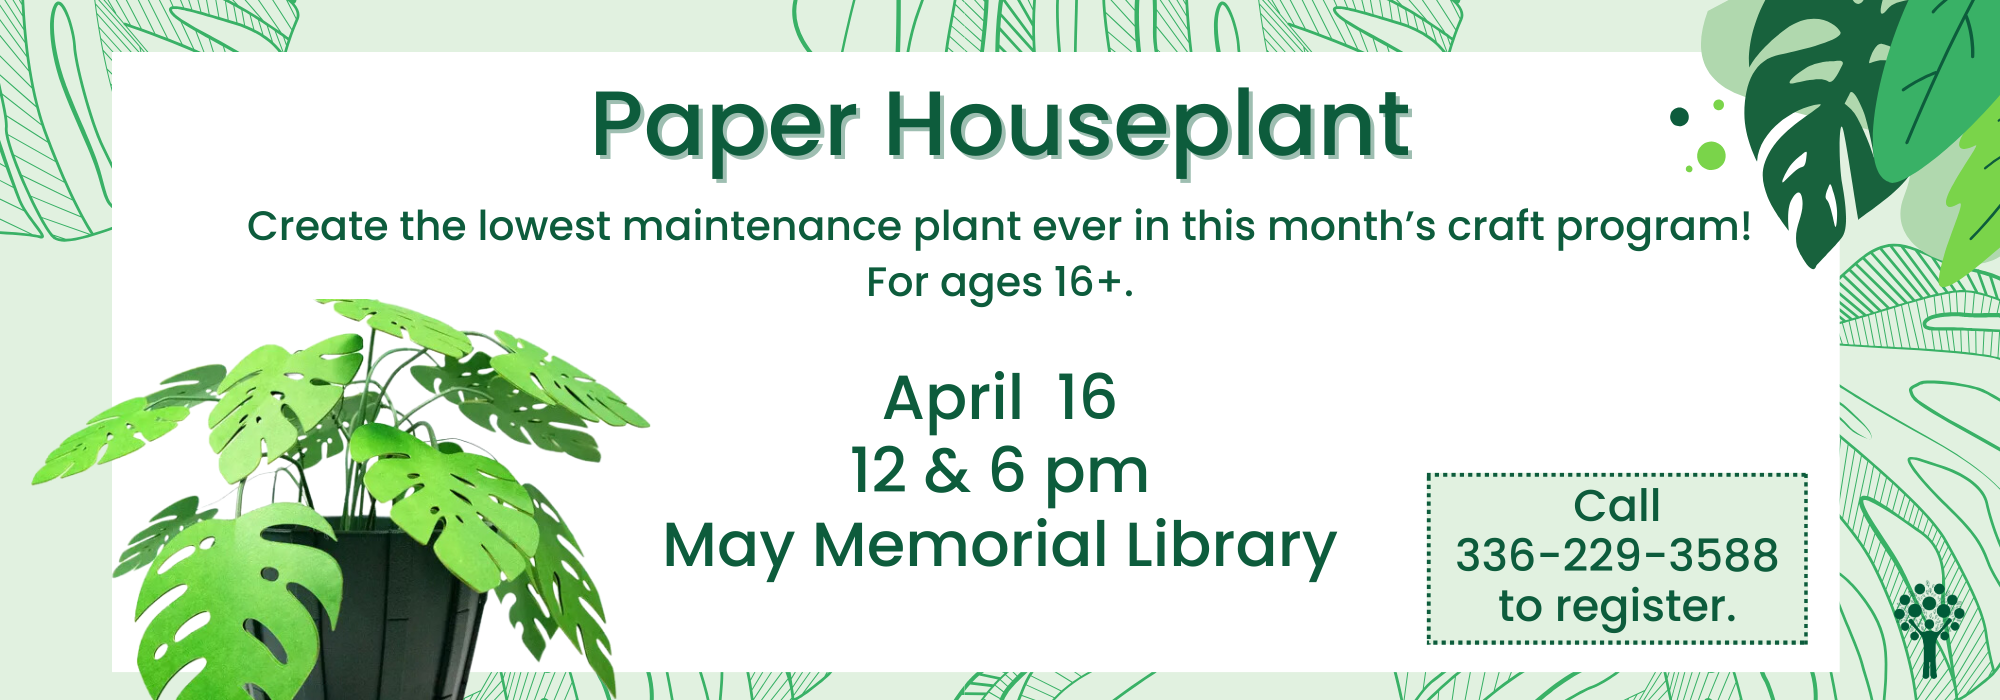 4.16 at Noon & 6 pm - Paper Houseplant at May Memorial